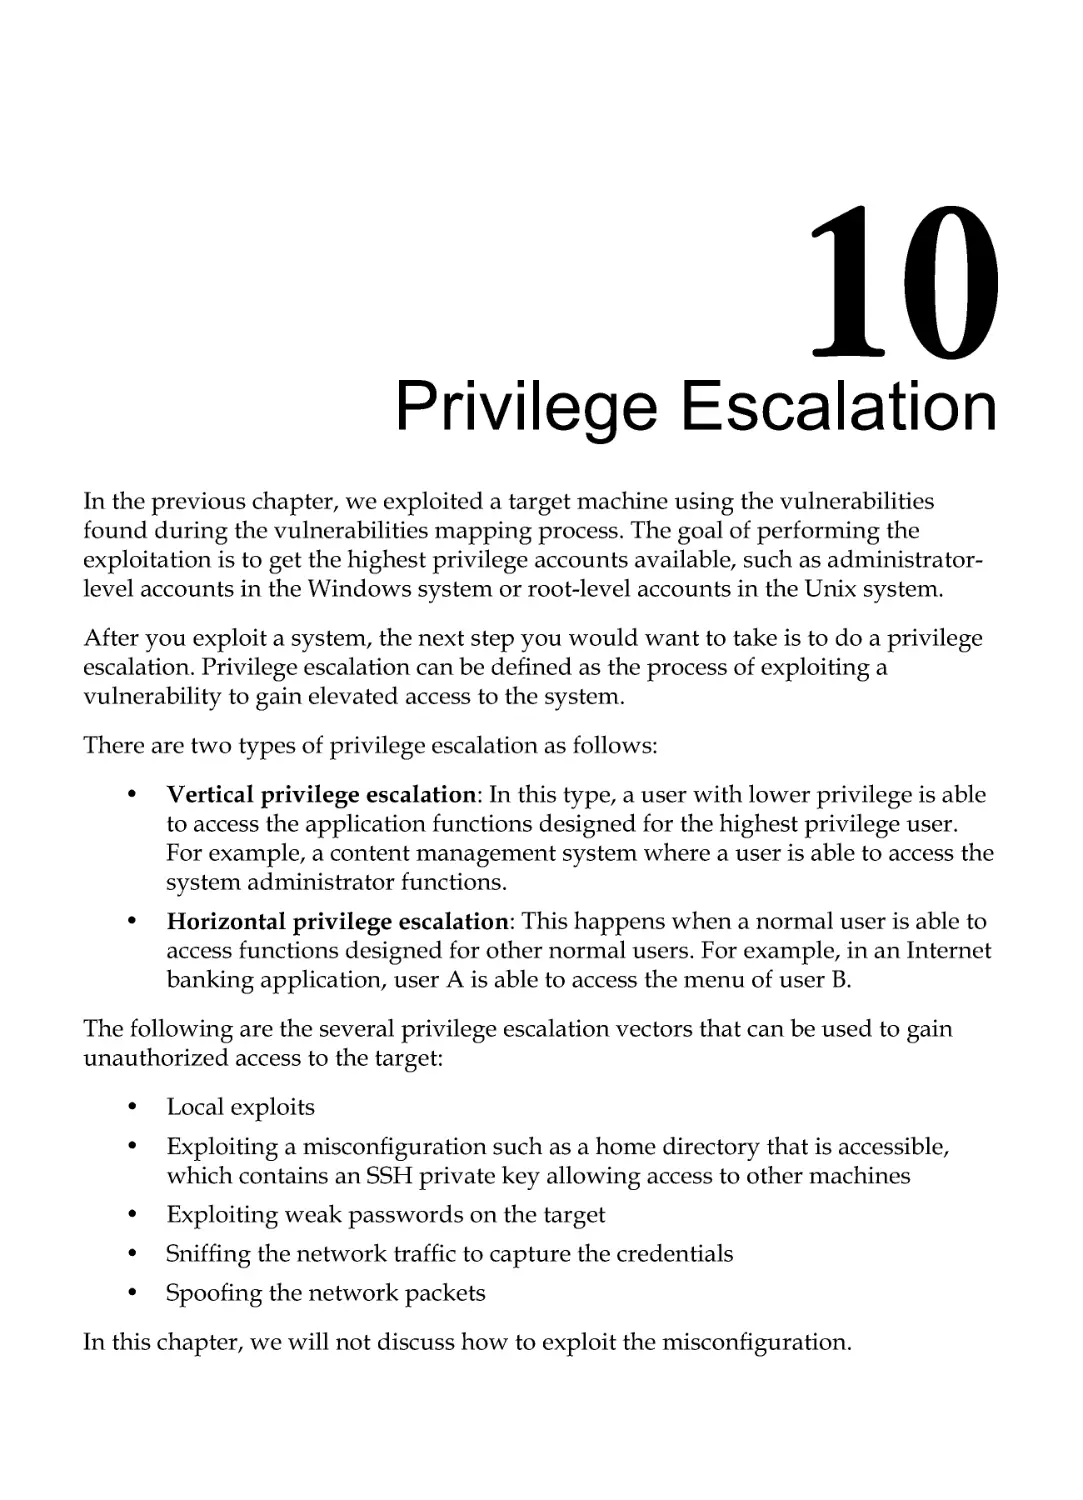 Chapter 10: Privilege Escalation